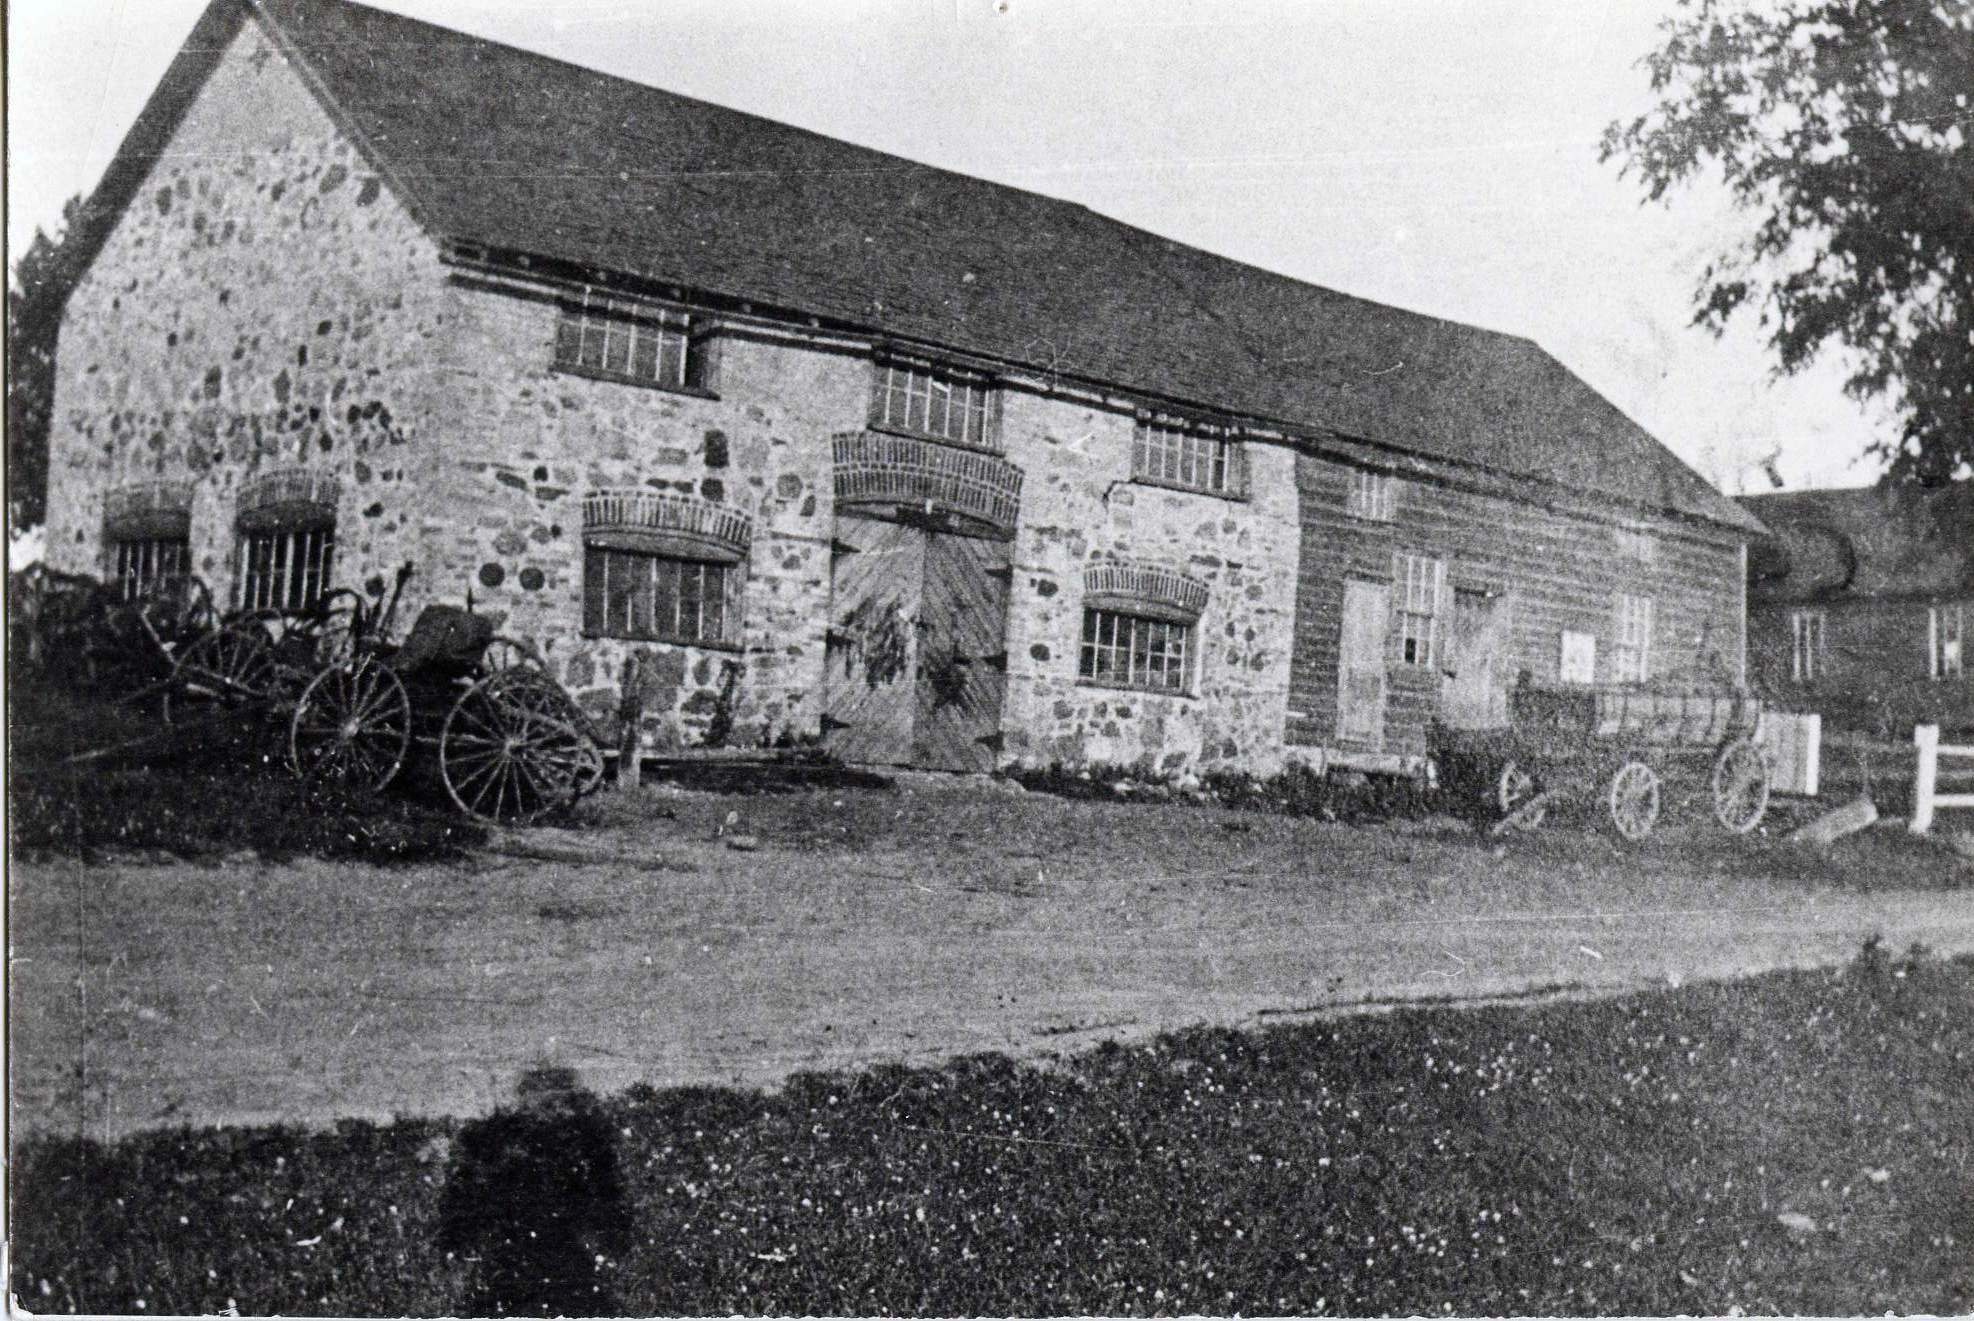 Vandorf Blacksmith Shop (partie de la visite autoguidée en voiture : hameaux de Whitchurch-Stouffville)